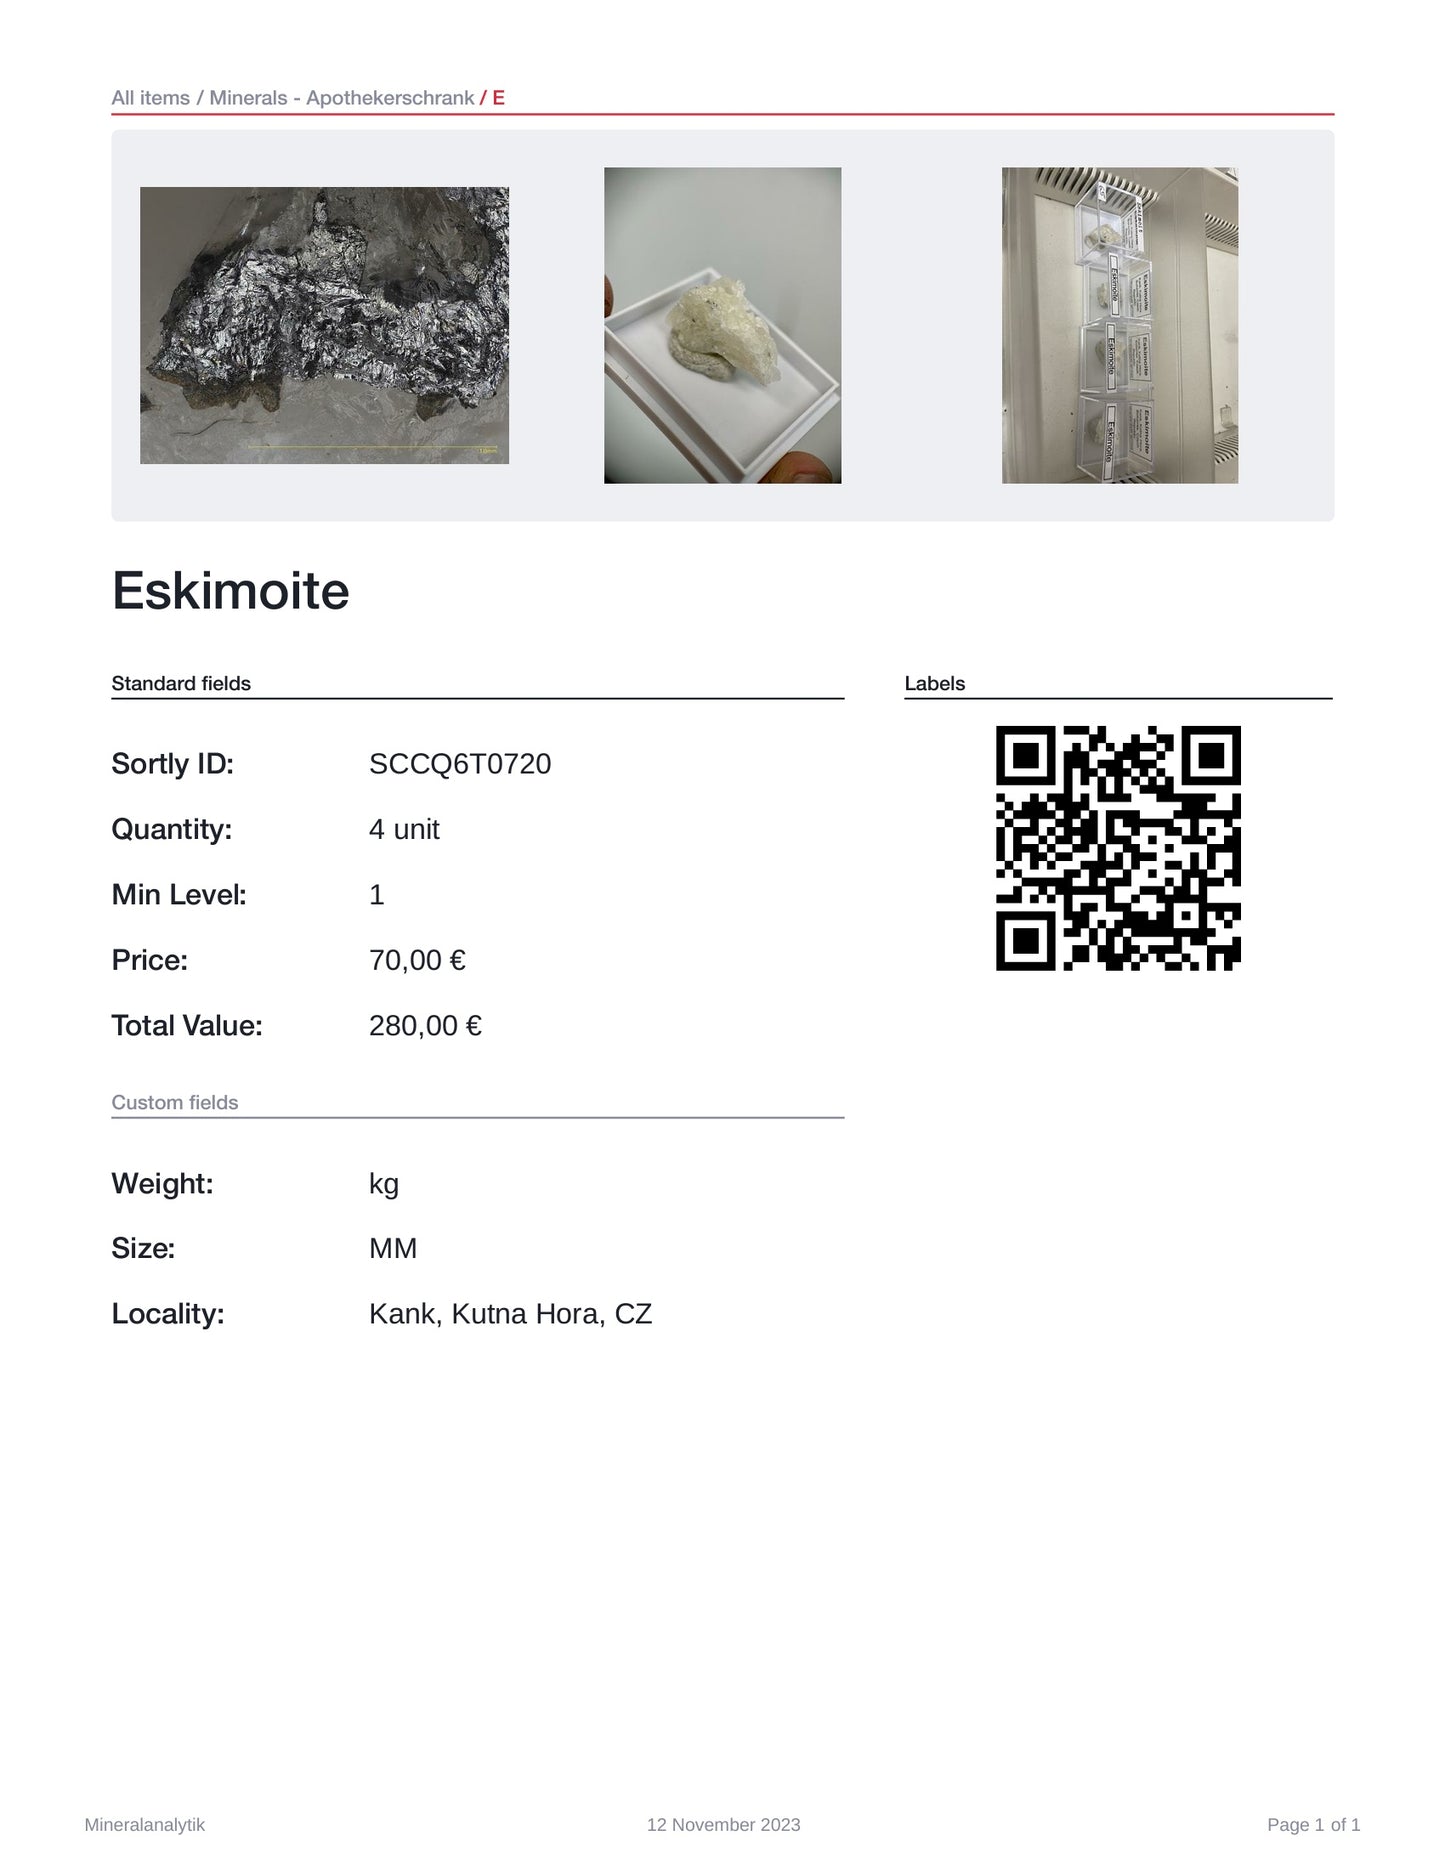 Eskimoite